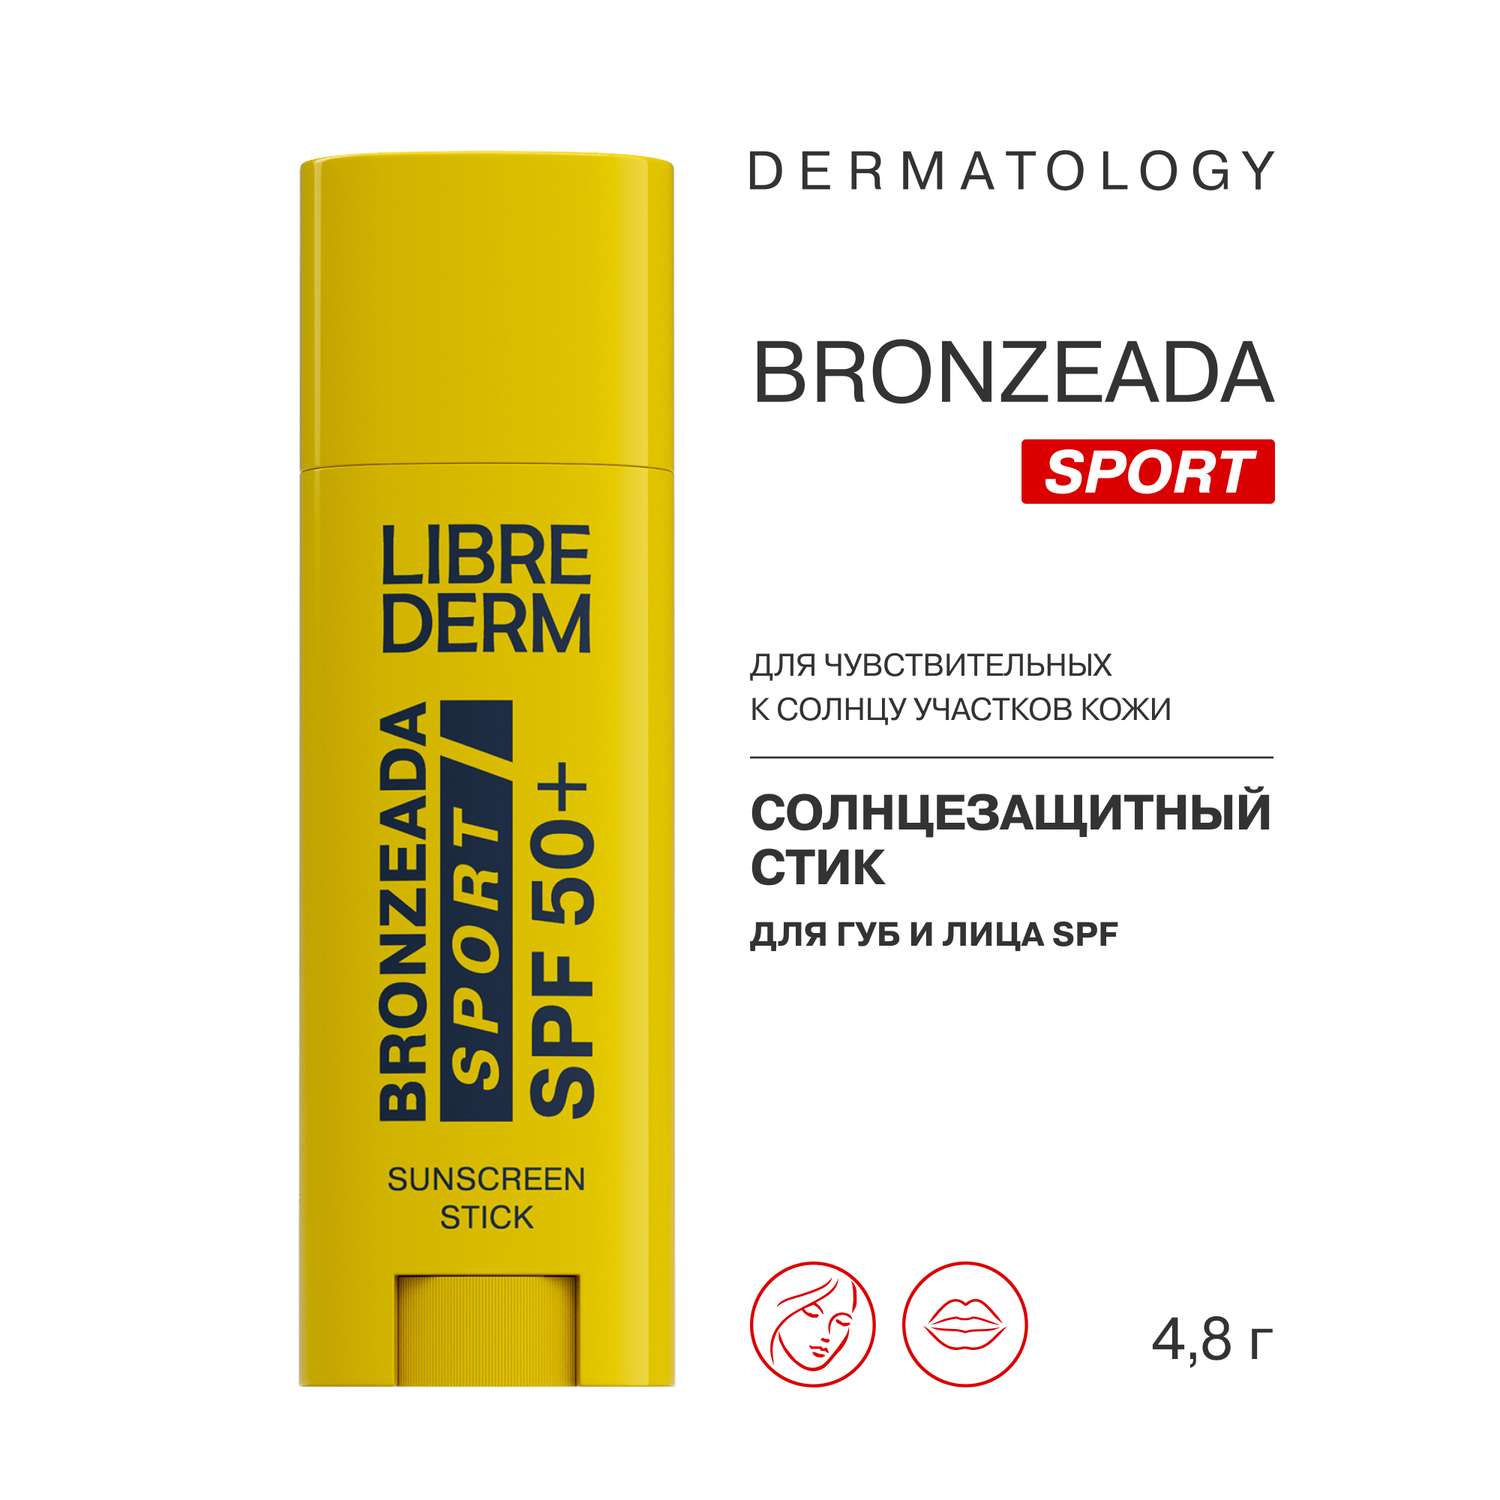 Бальзам Librederm Bronzeada sport солнцезащитный стик для губ и лица SPF 50+ - фото 2